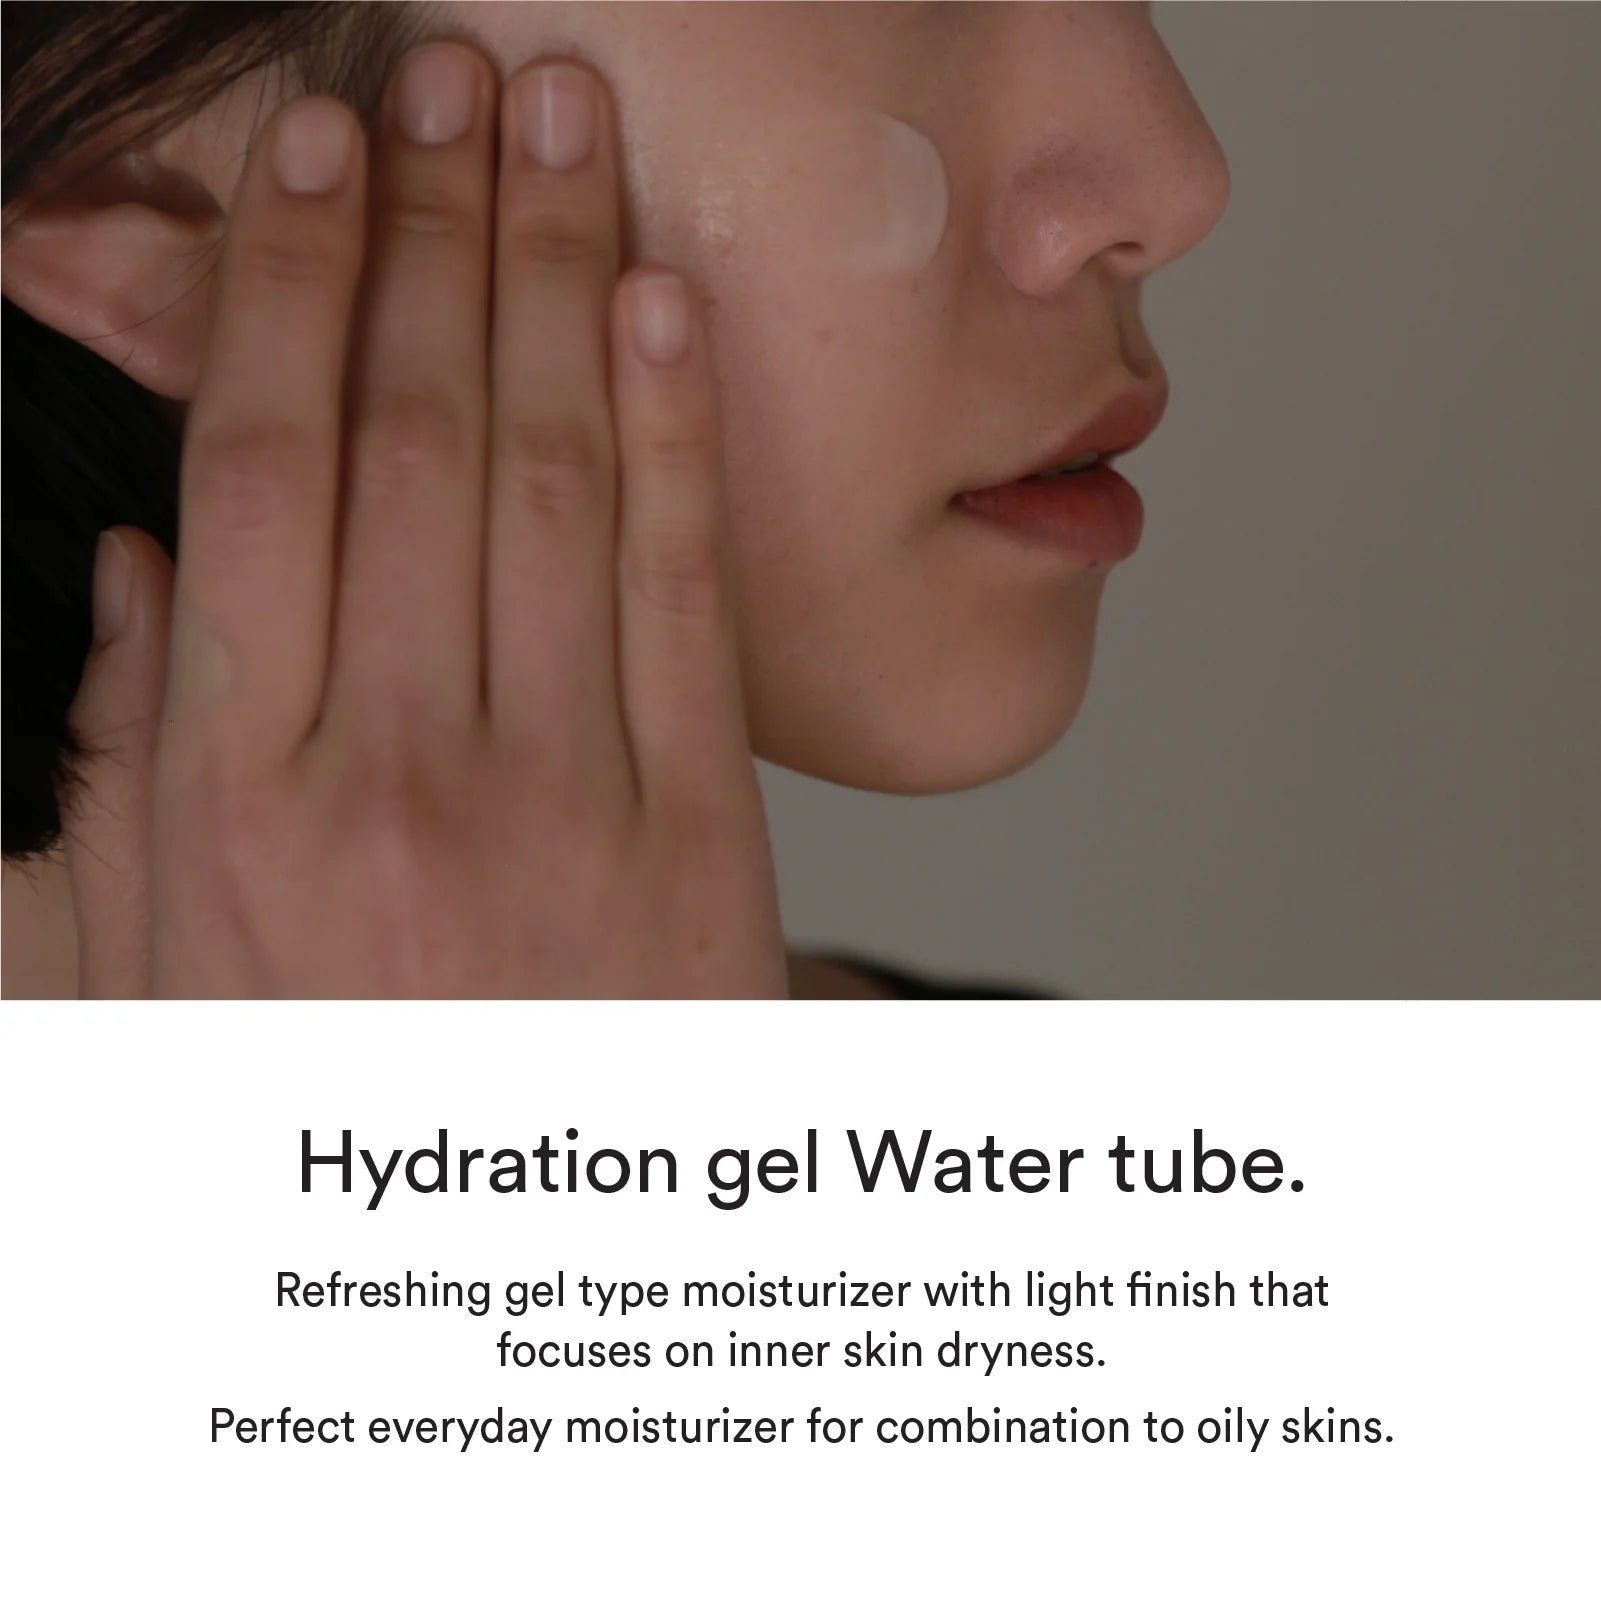 Abib Hydration Gel Water Tube